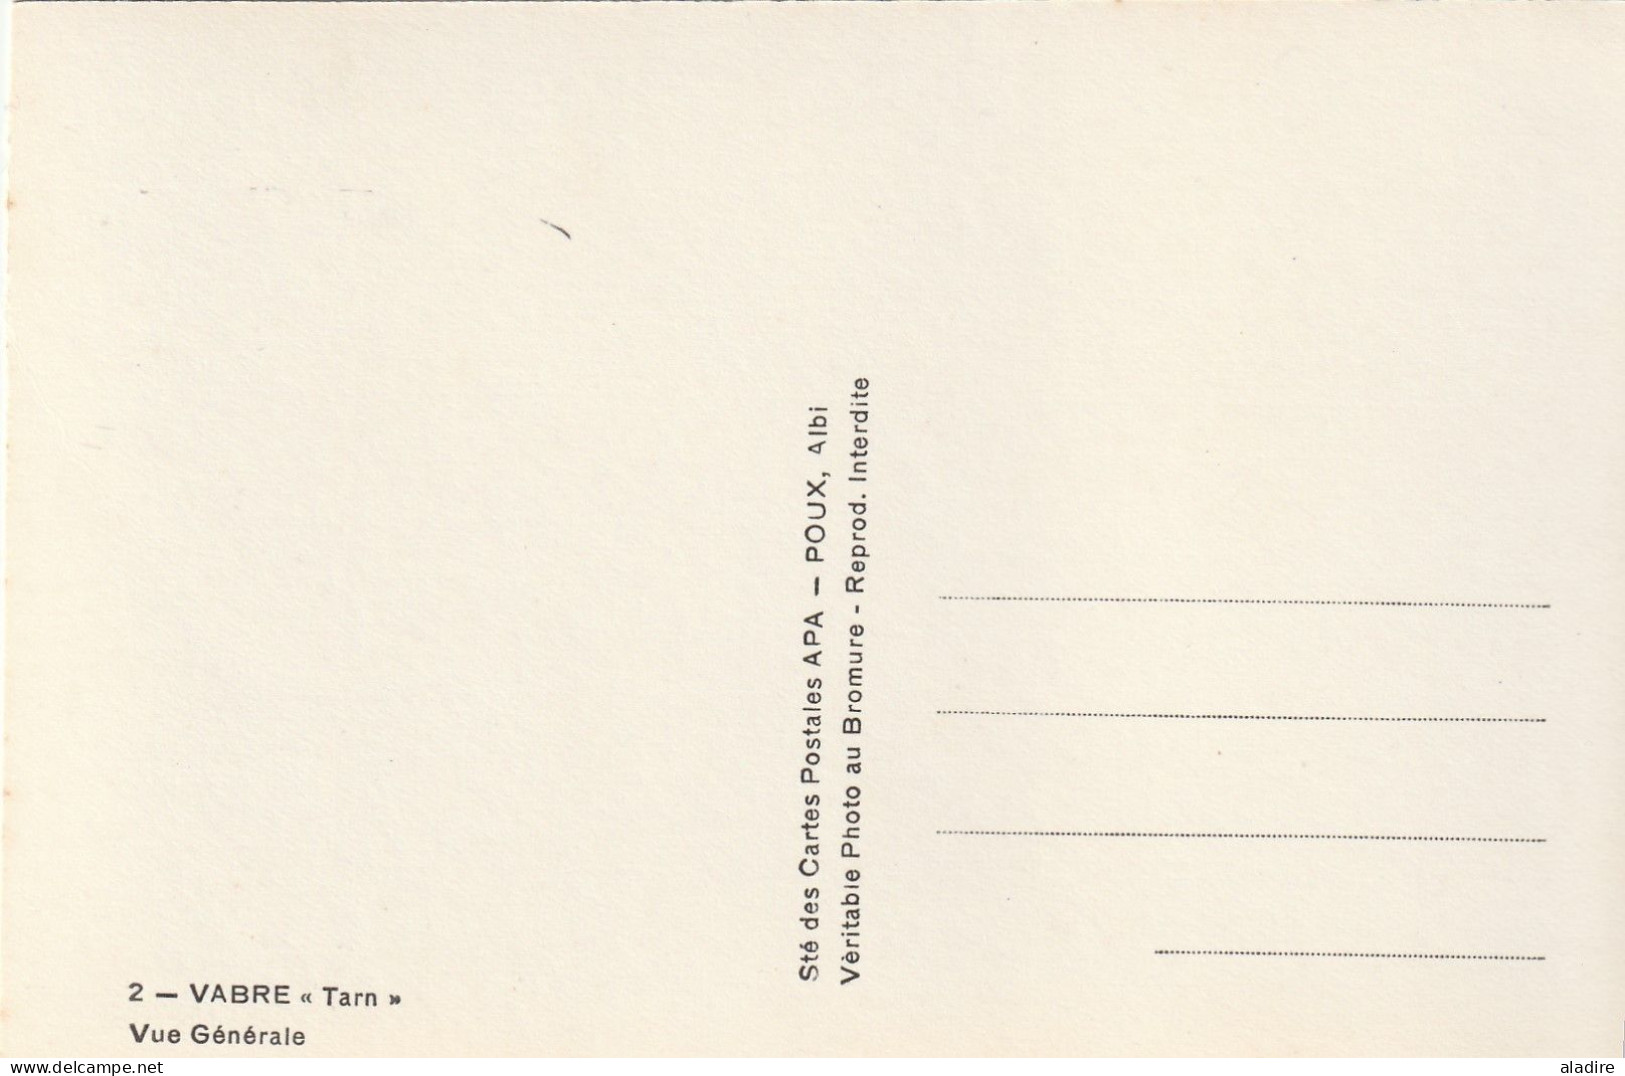 VABRE 81330 Tarn - lot de 4 cartes postales neuves différentes Noir et Blanc - APA, POUX, Albi - années 1940